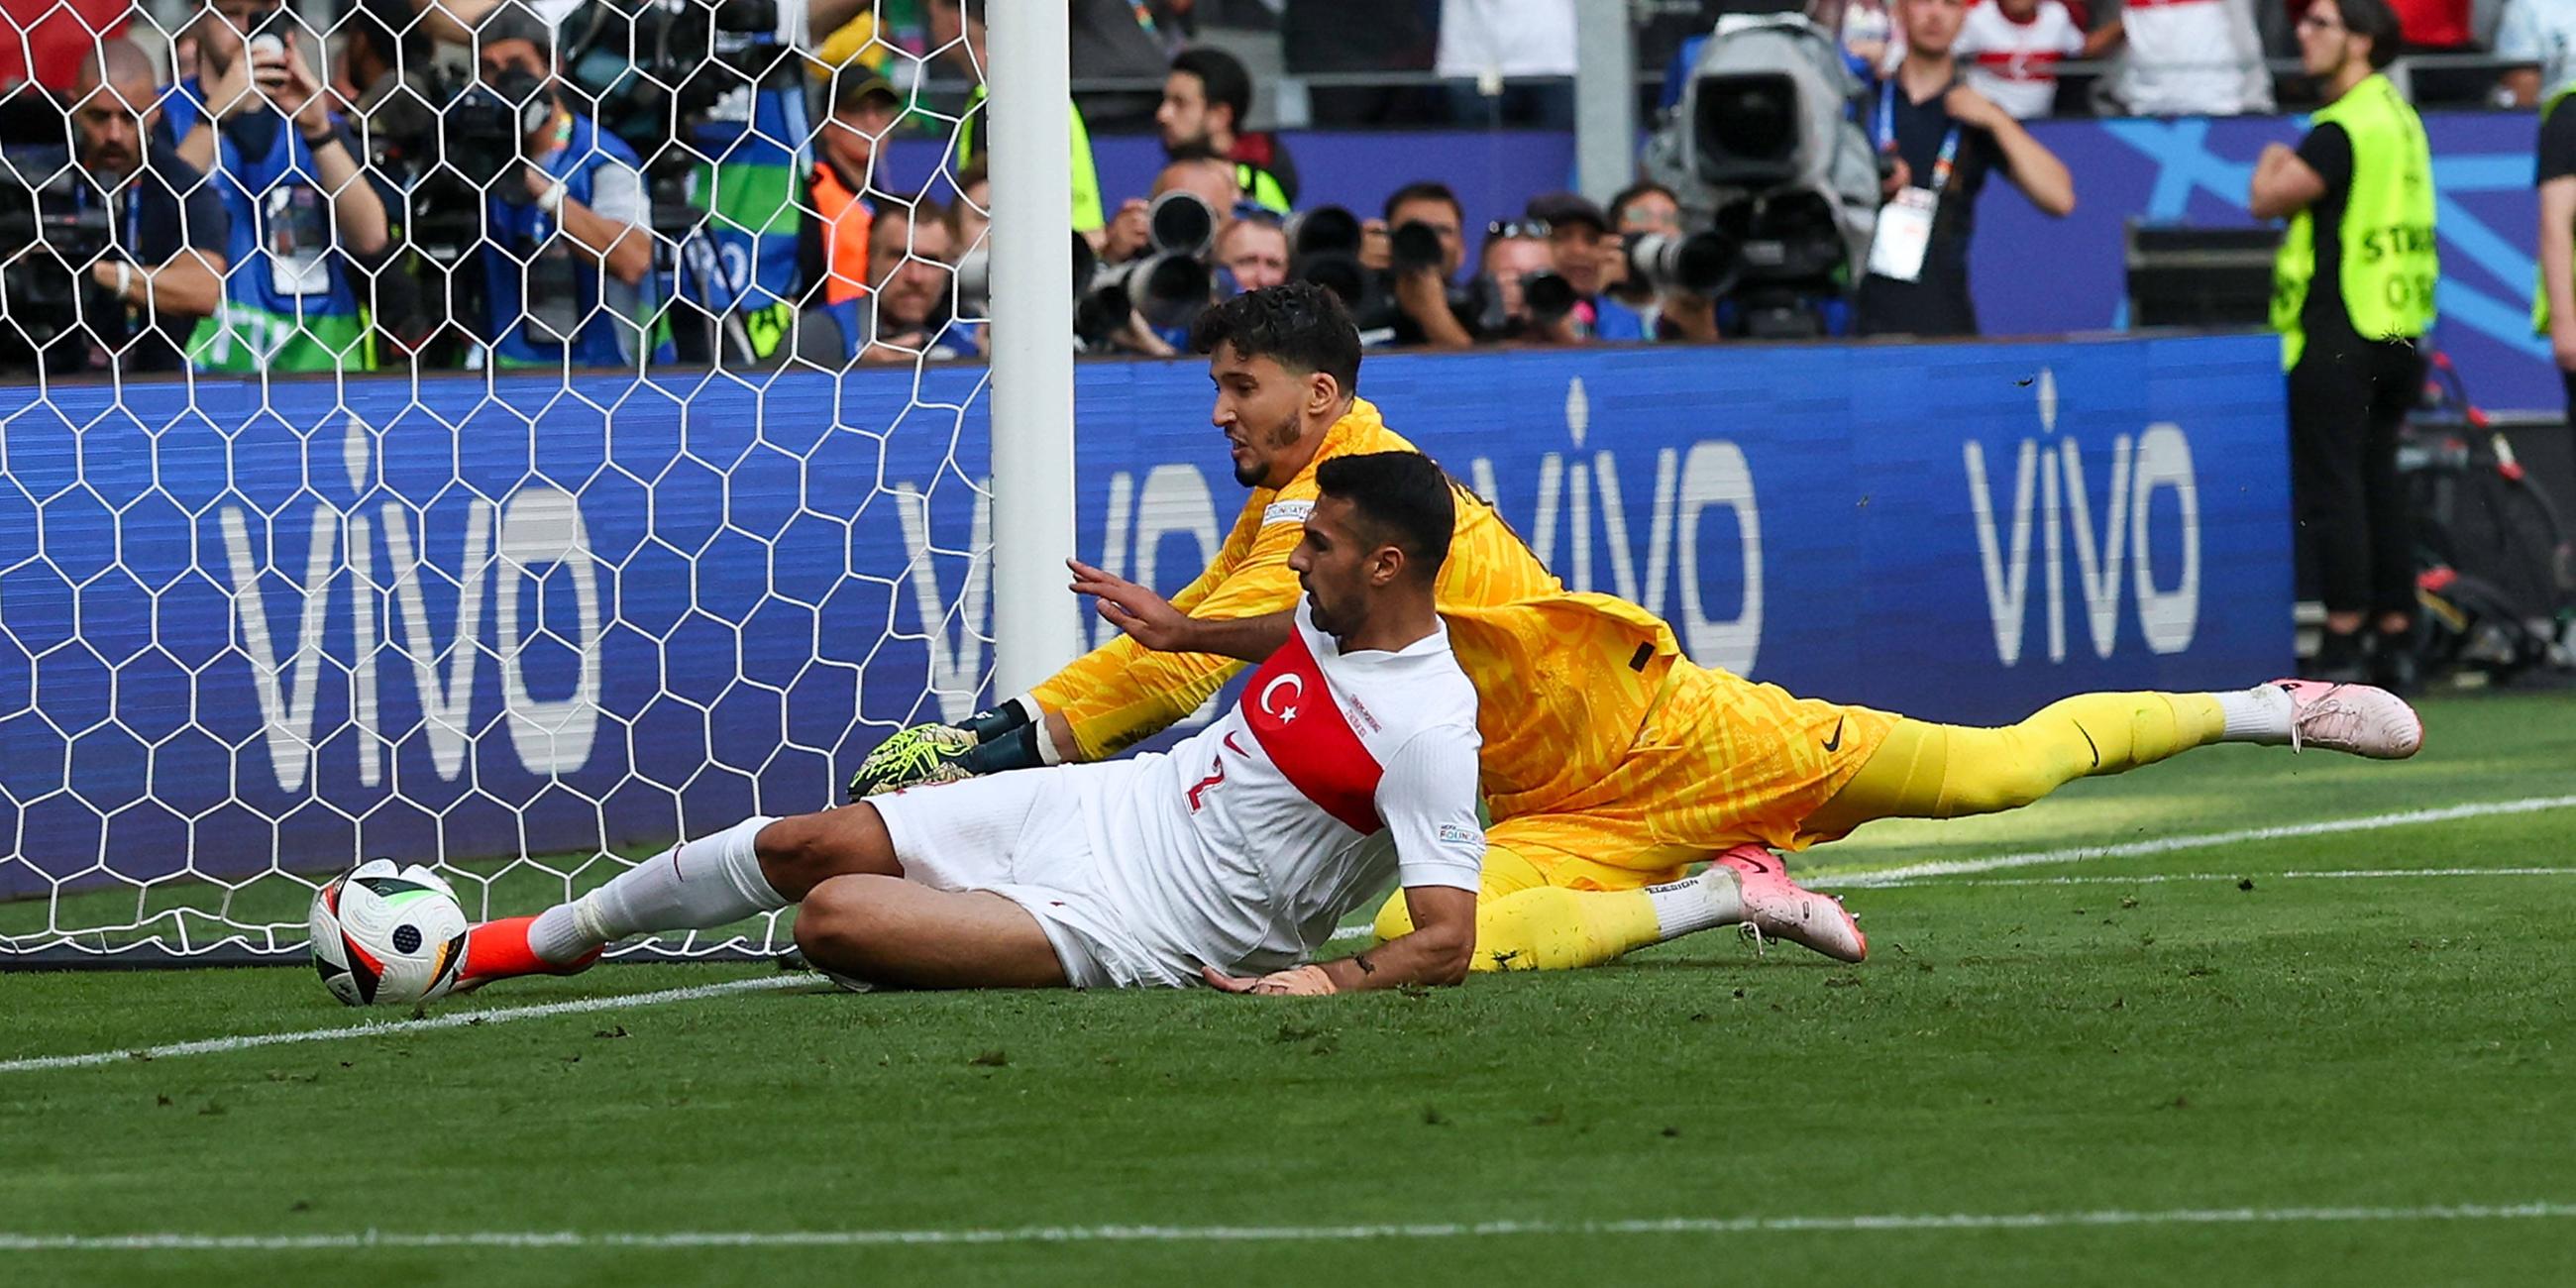 Der türkische Spieler Zeki Celik schießt ein Eigentor beim Spiel gegen Portugal.